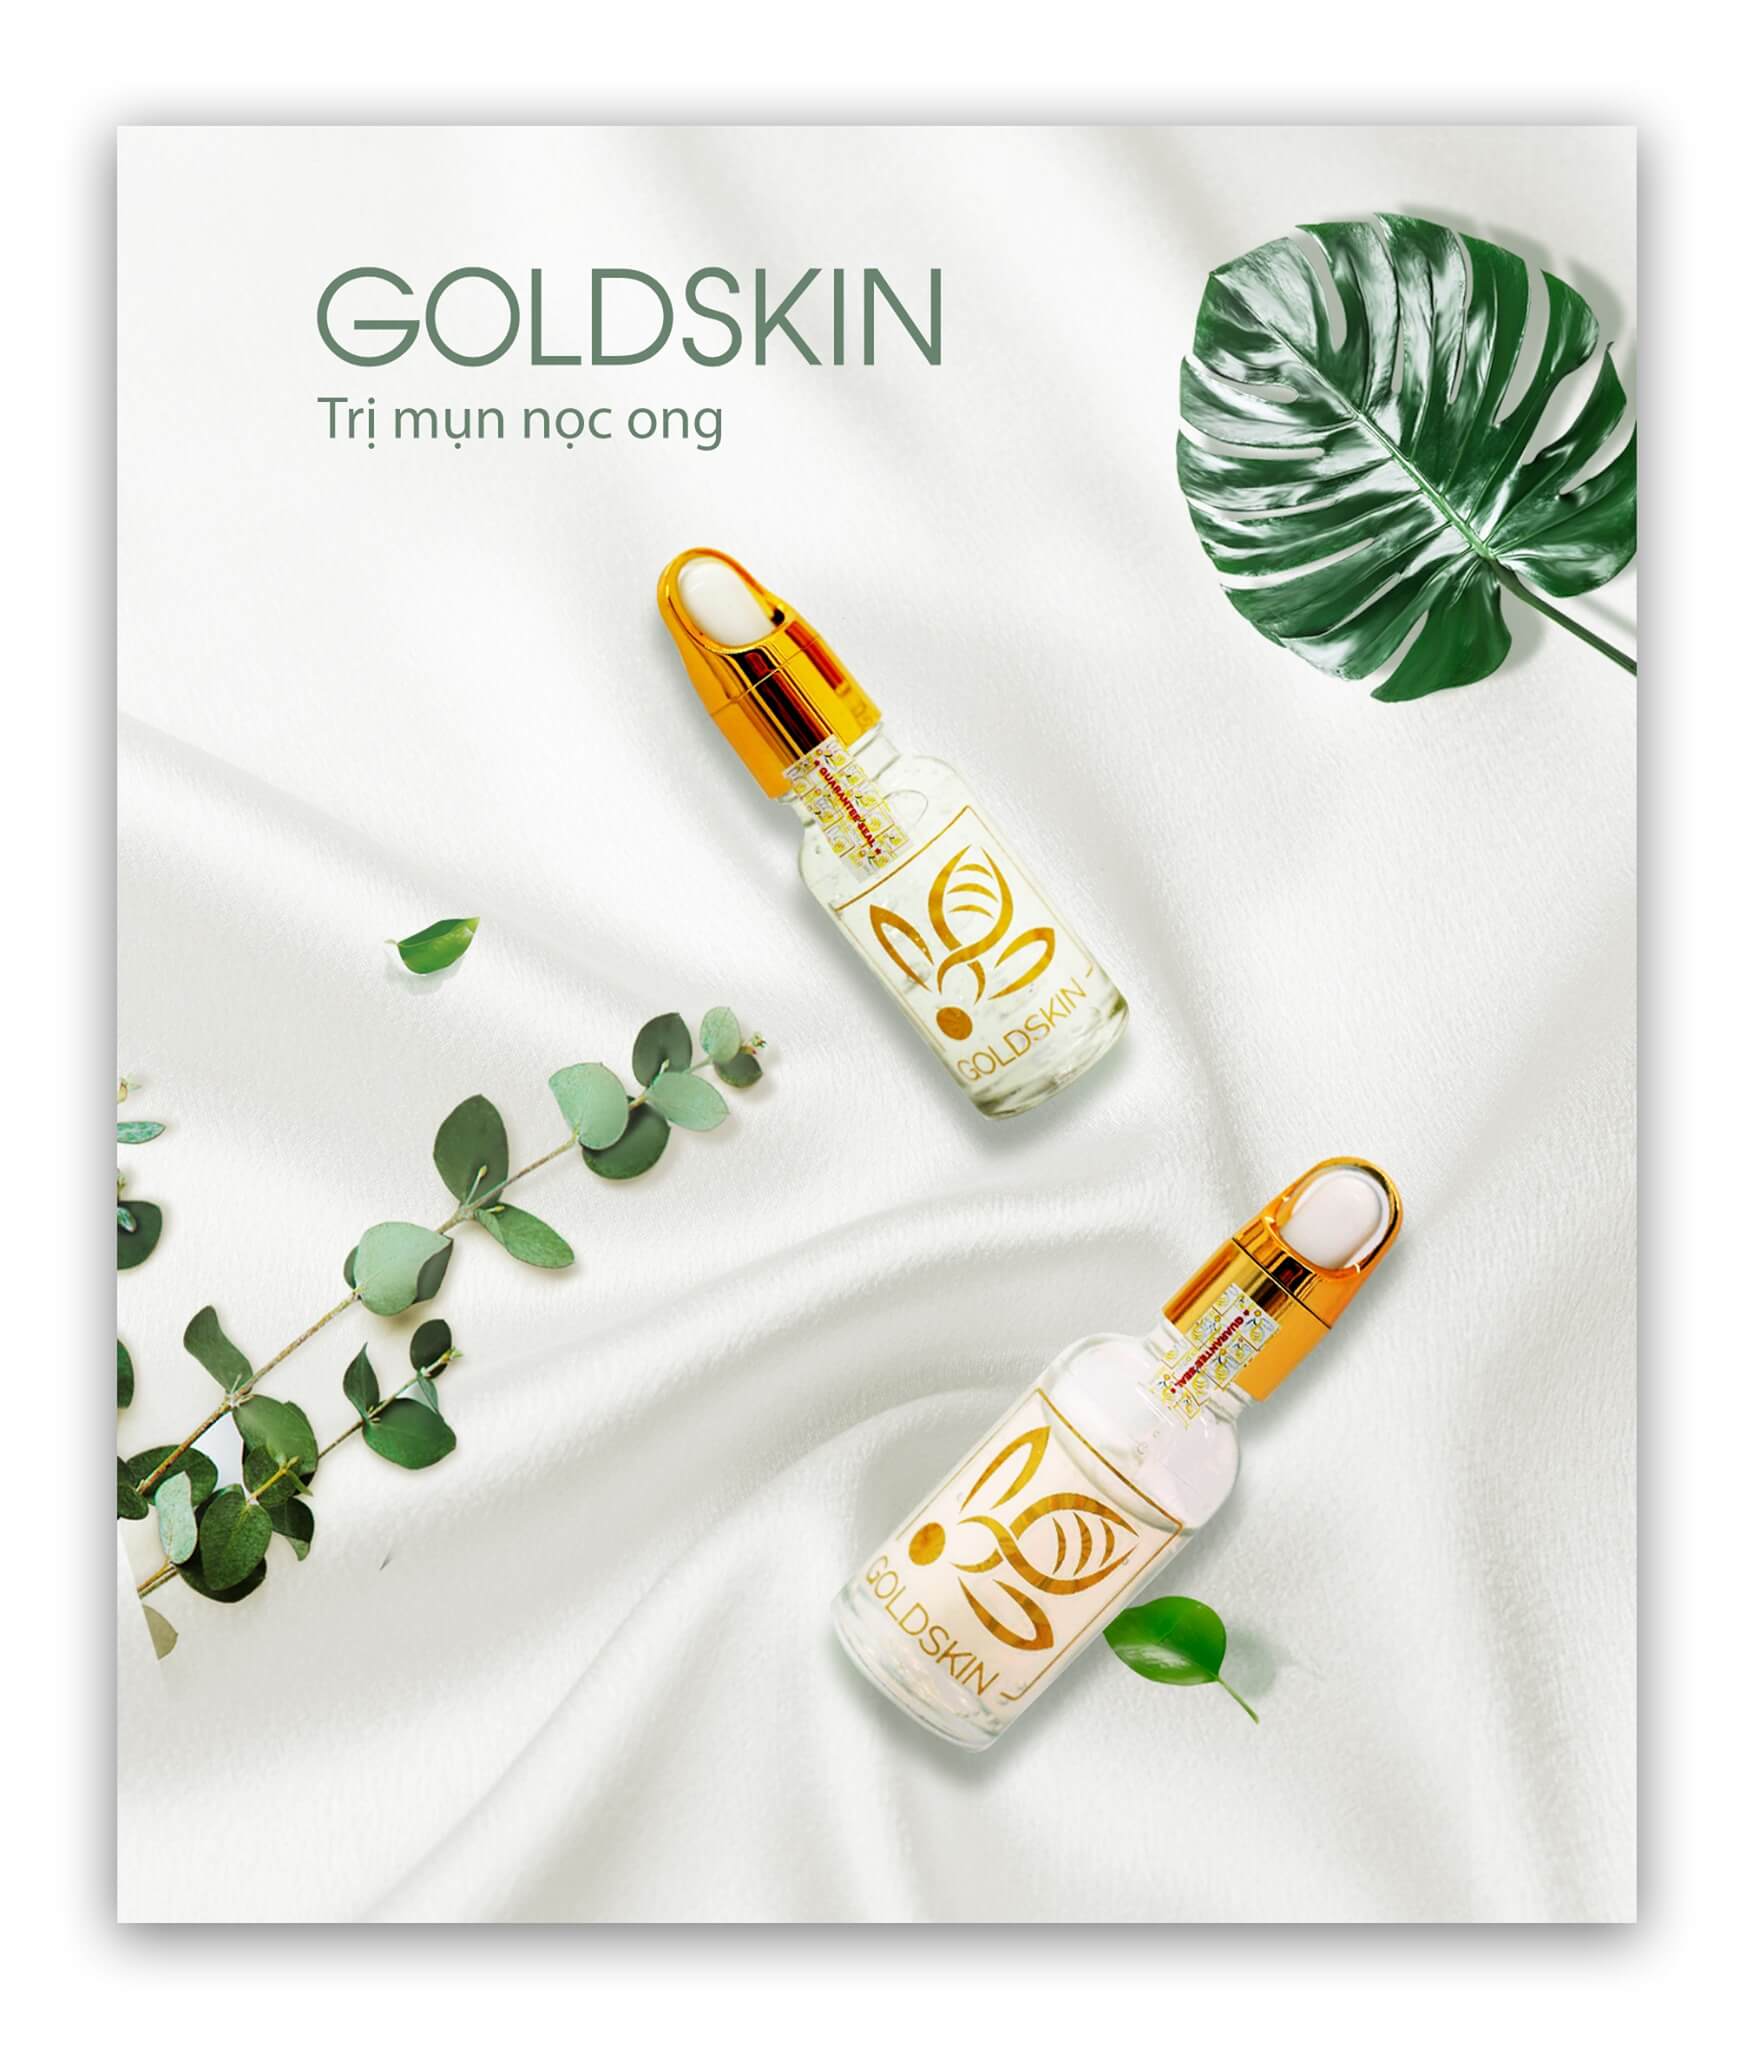 Goldskin - thương hiệu với các sản phẩm được chiết xuất hoàn toàn từ tự nhiên